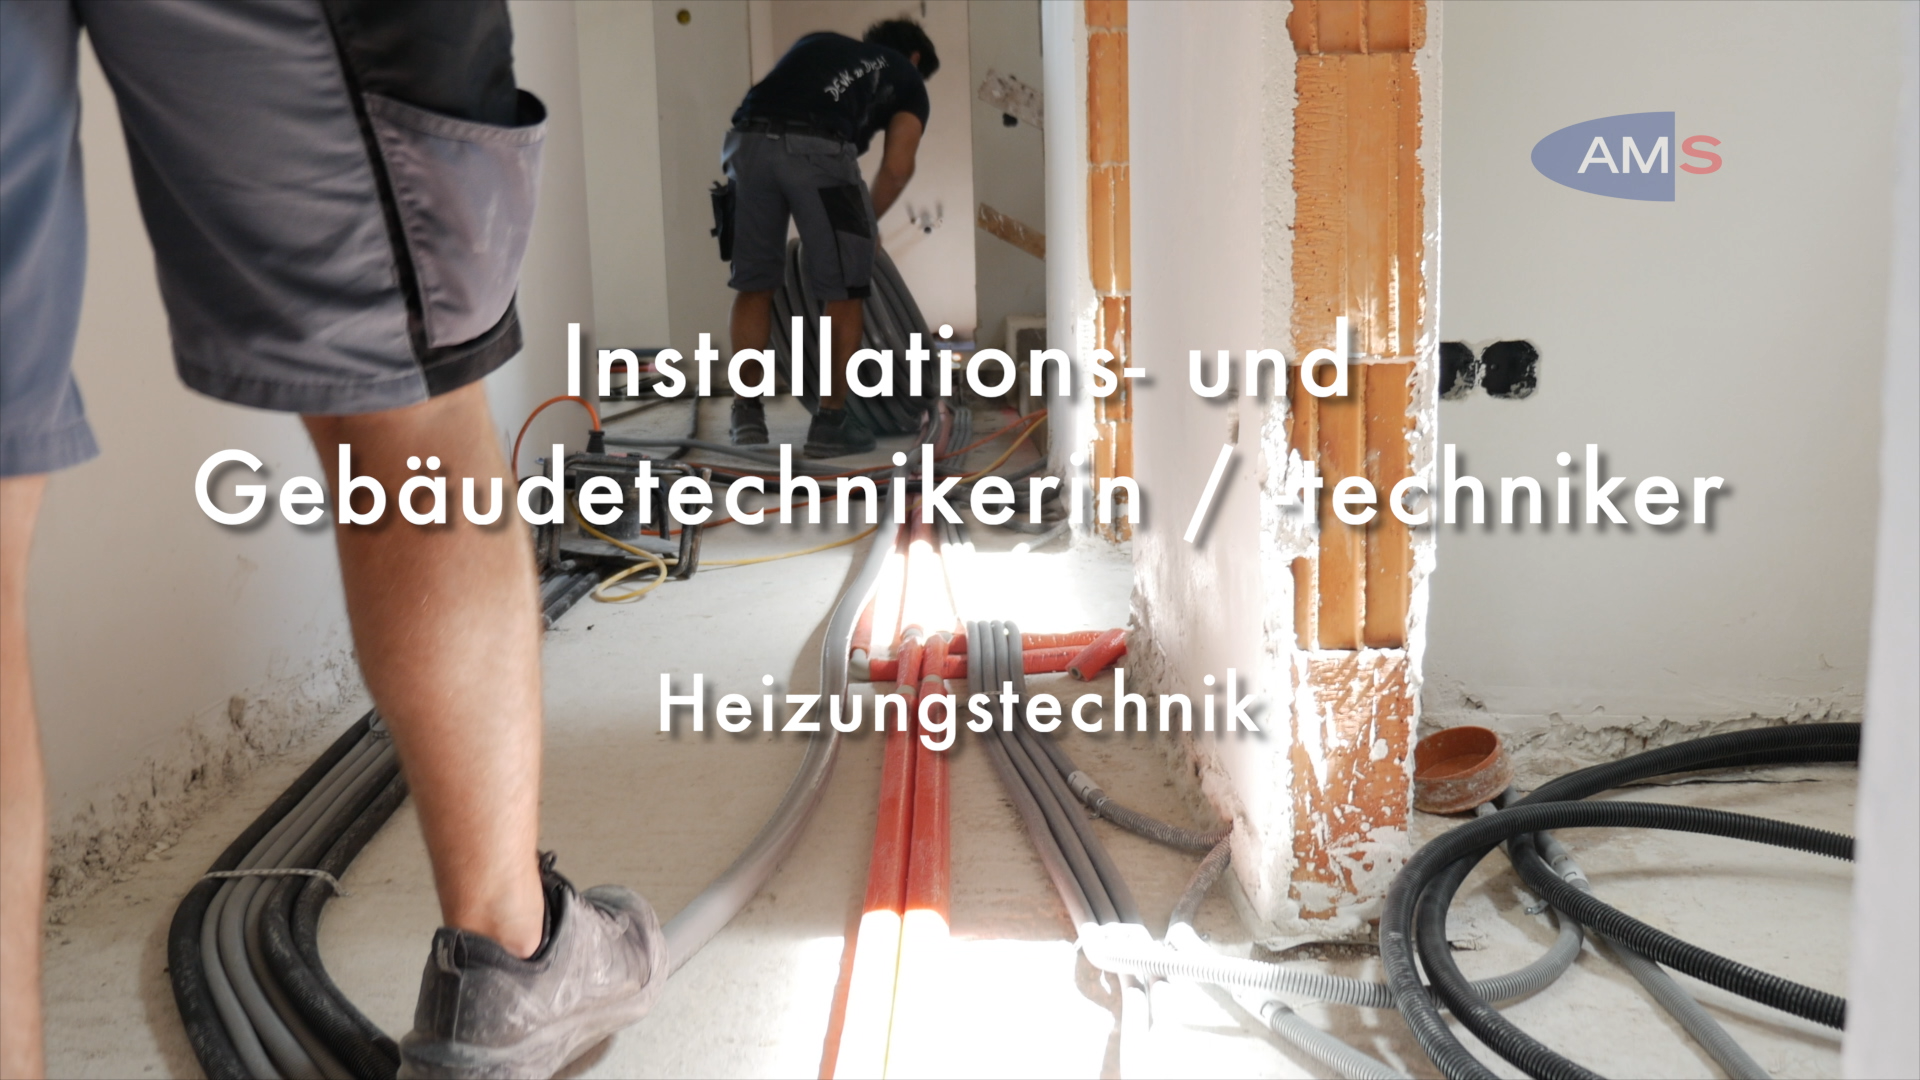 Installations- und GebäudetechnikerIn - Hauptmodul Heizungstechnik